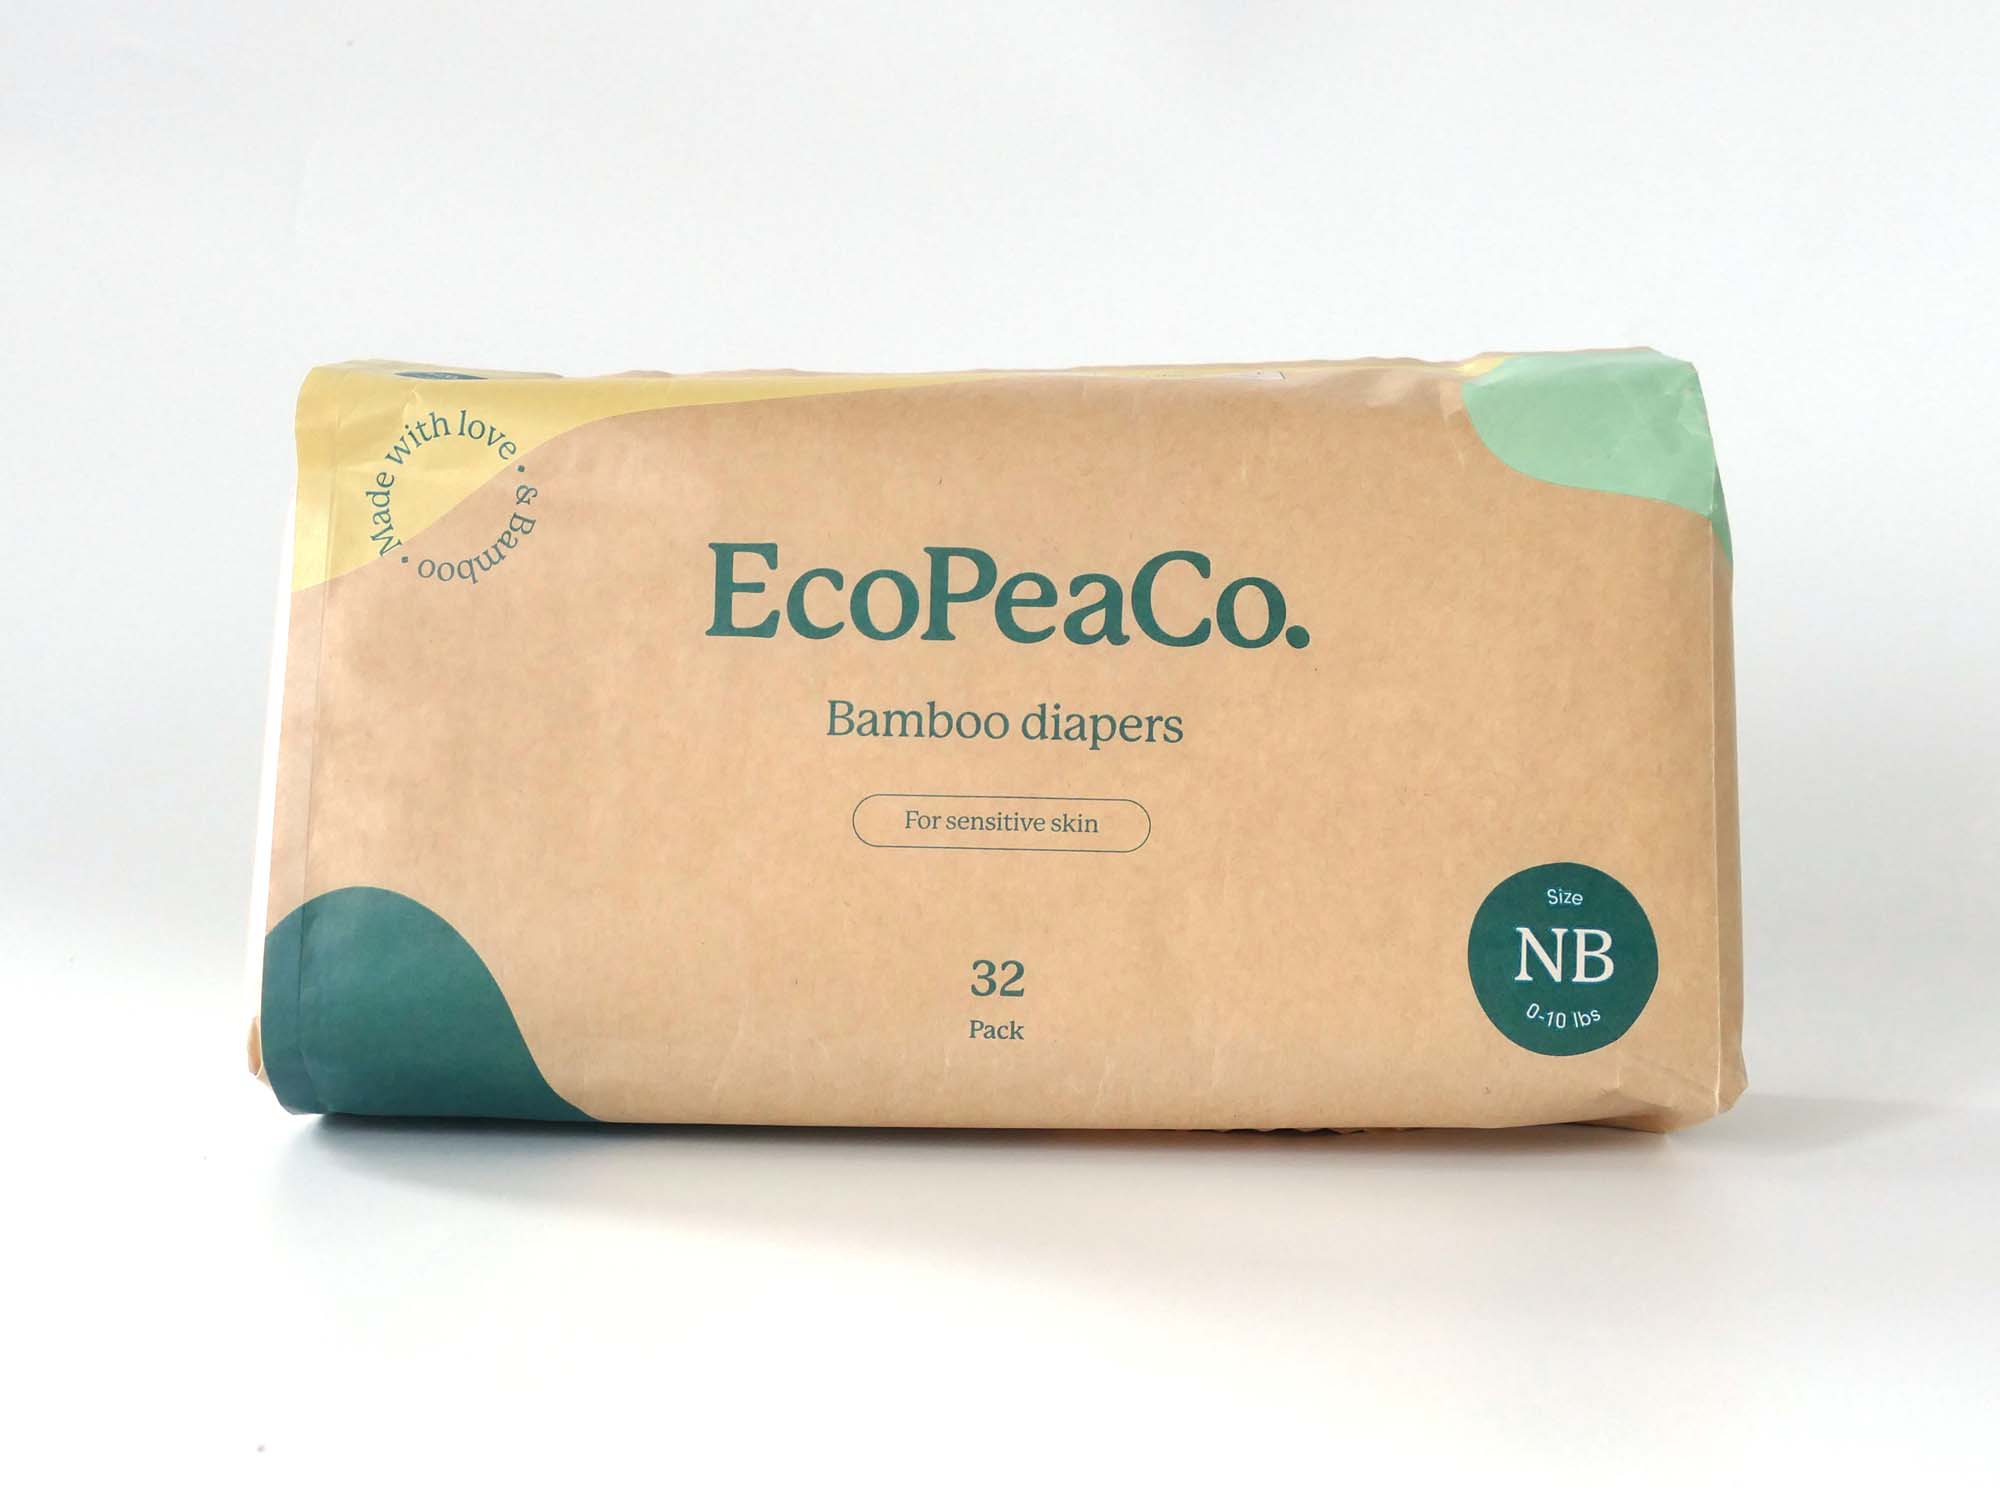 Natural Bamboo Diaper - Naturally Antibacterial